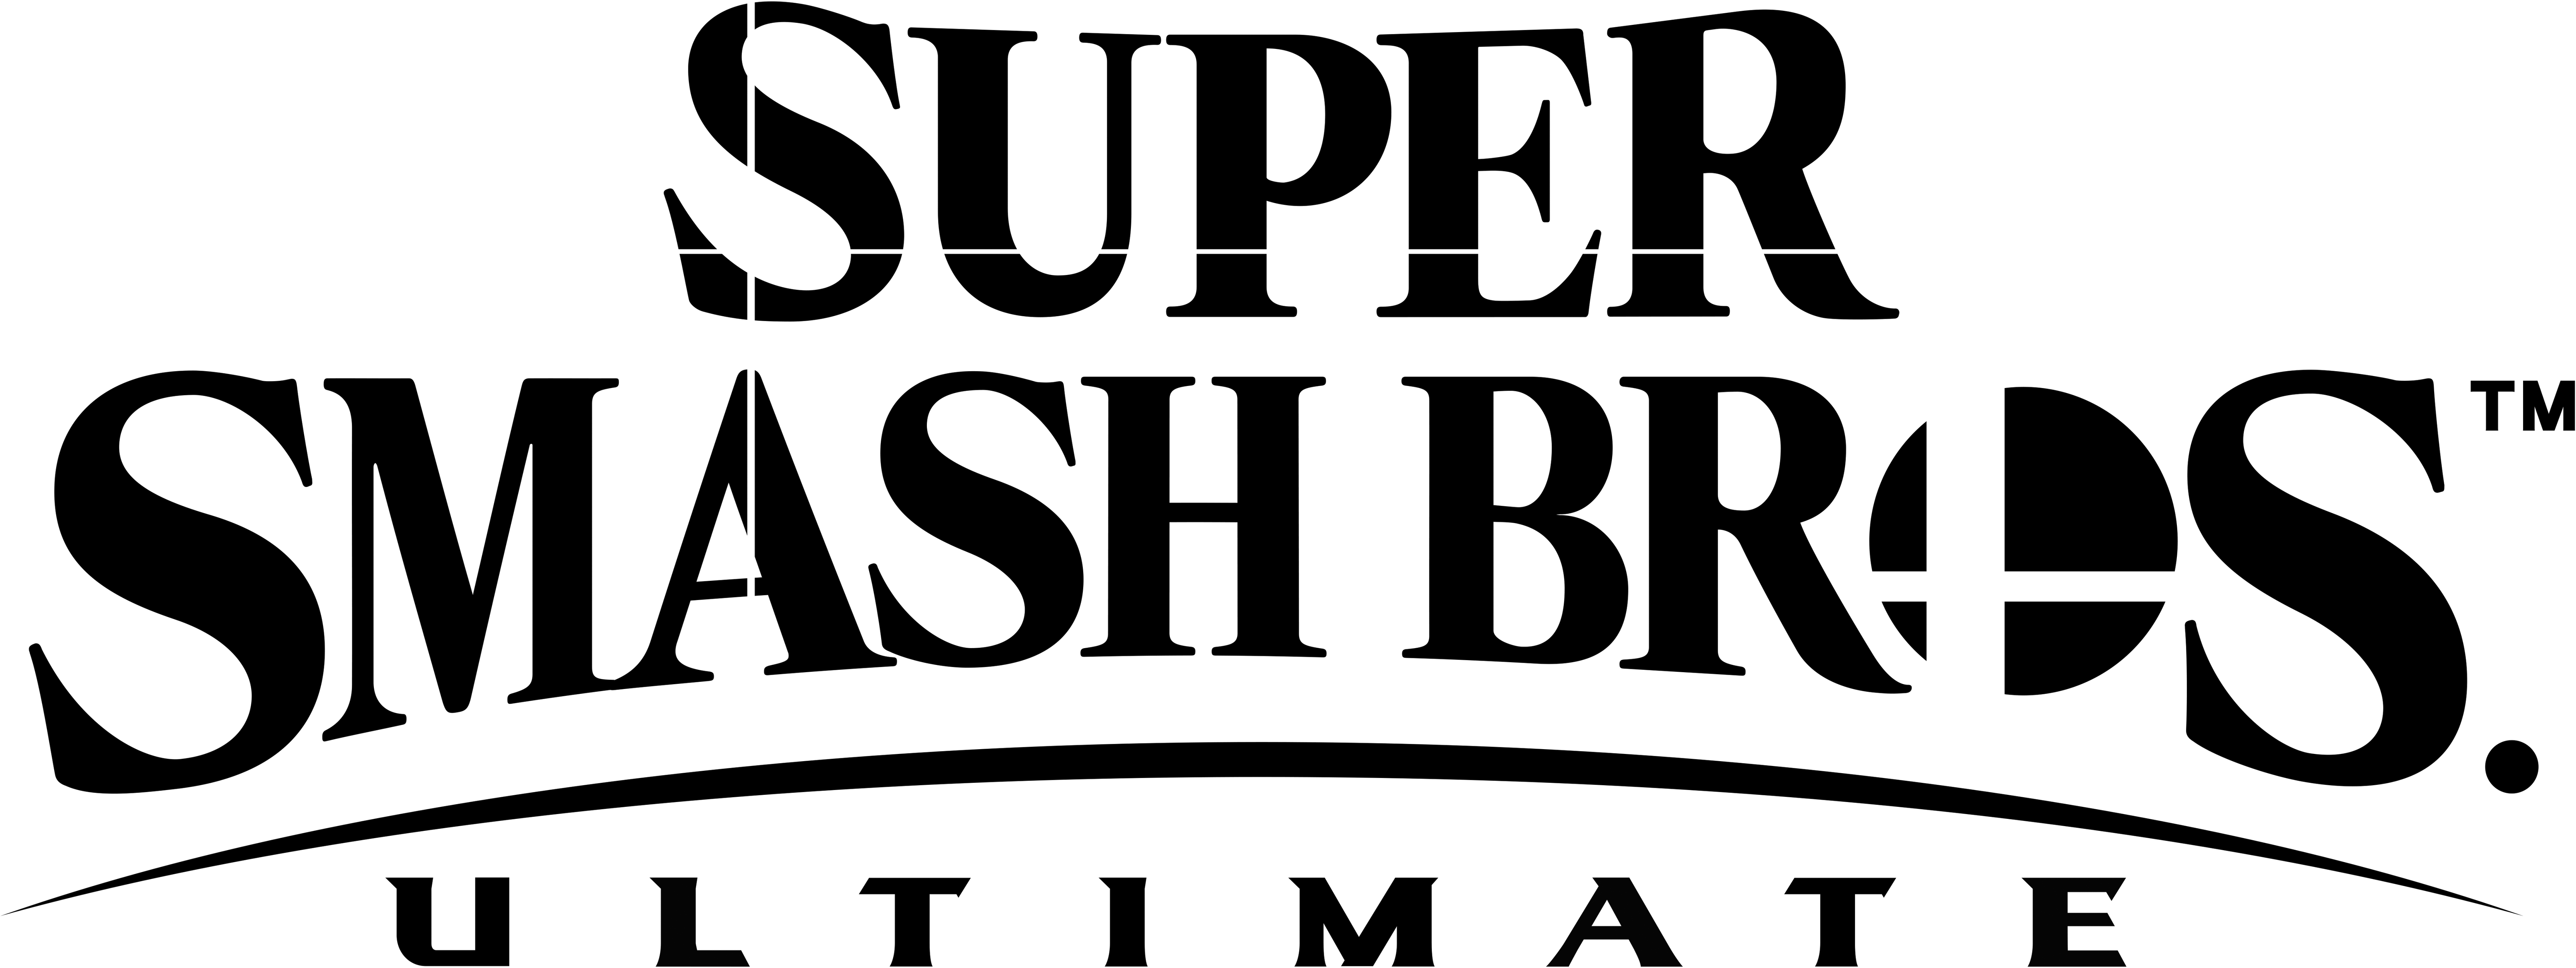 Render Glitch - Super Smash Bros Ultimate Logo (1280x499), Png Download